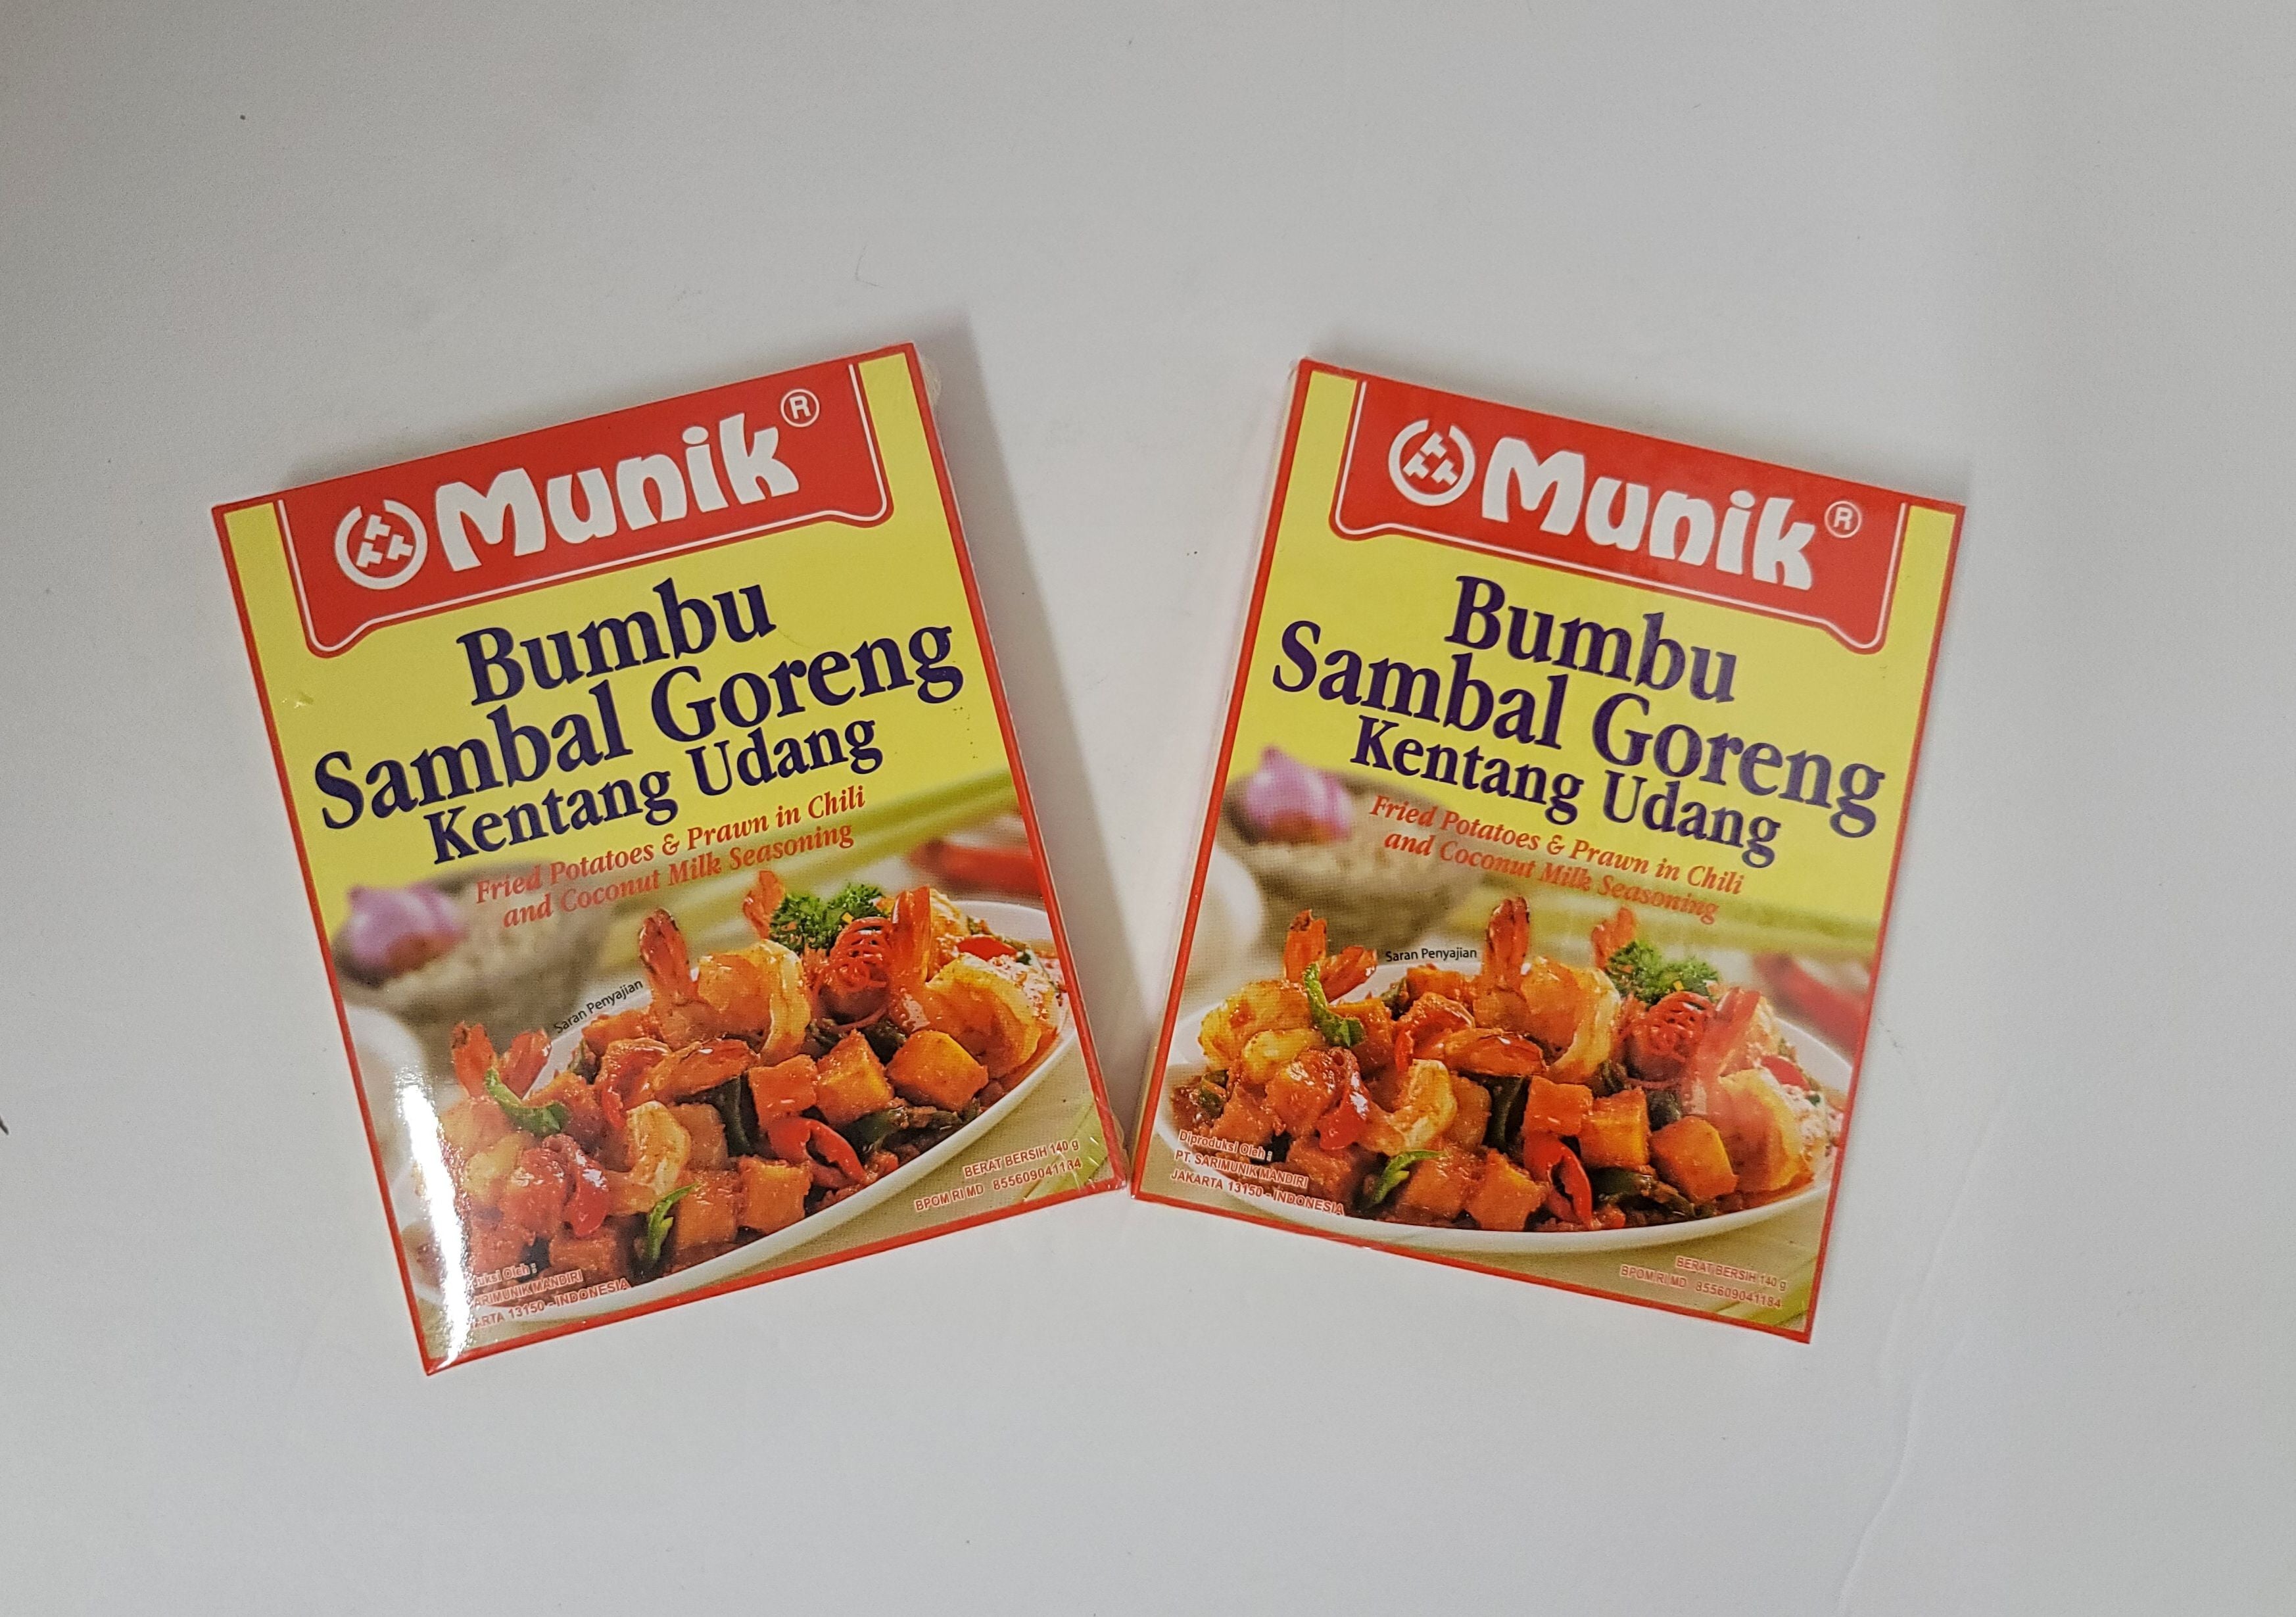 Munik Bumbu Sambal Goreng Kentang Udang (Fried Potatoes and Prawn in Chili and Coconut Milk Seasoning)